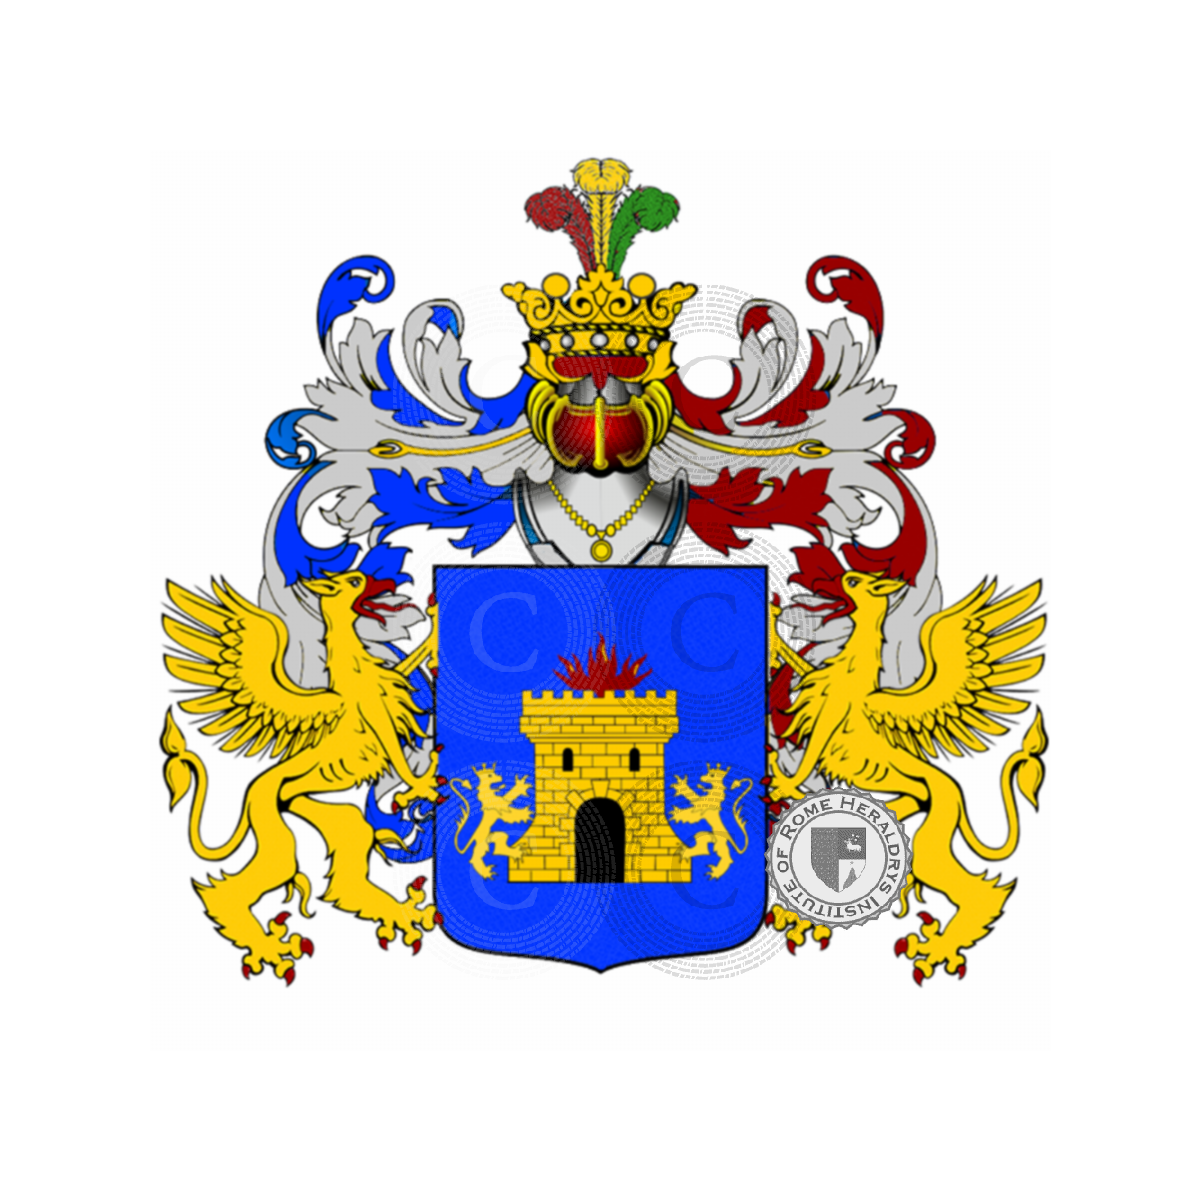 Escudo de la familiaArdizzoni, Ardizon,Ardizzoni